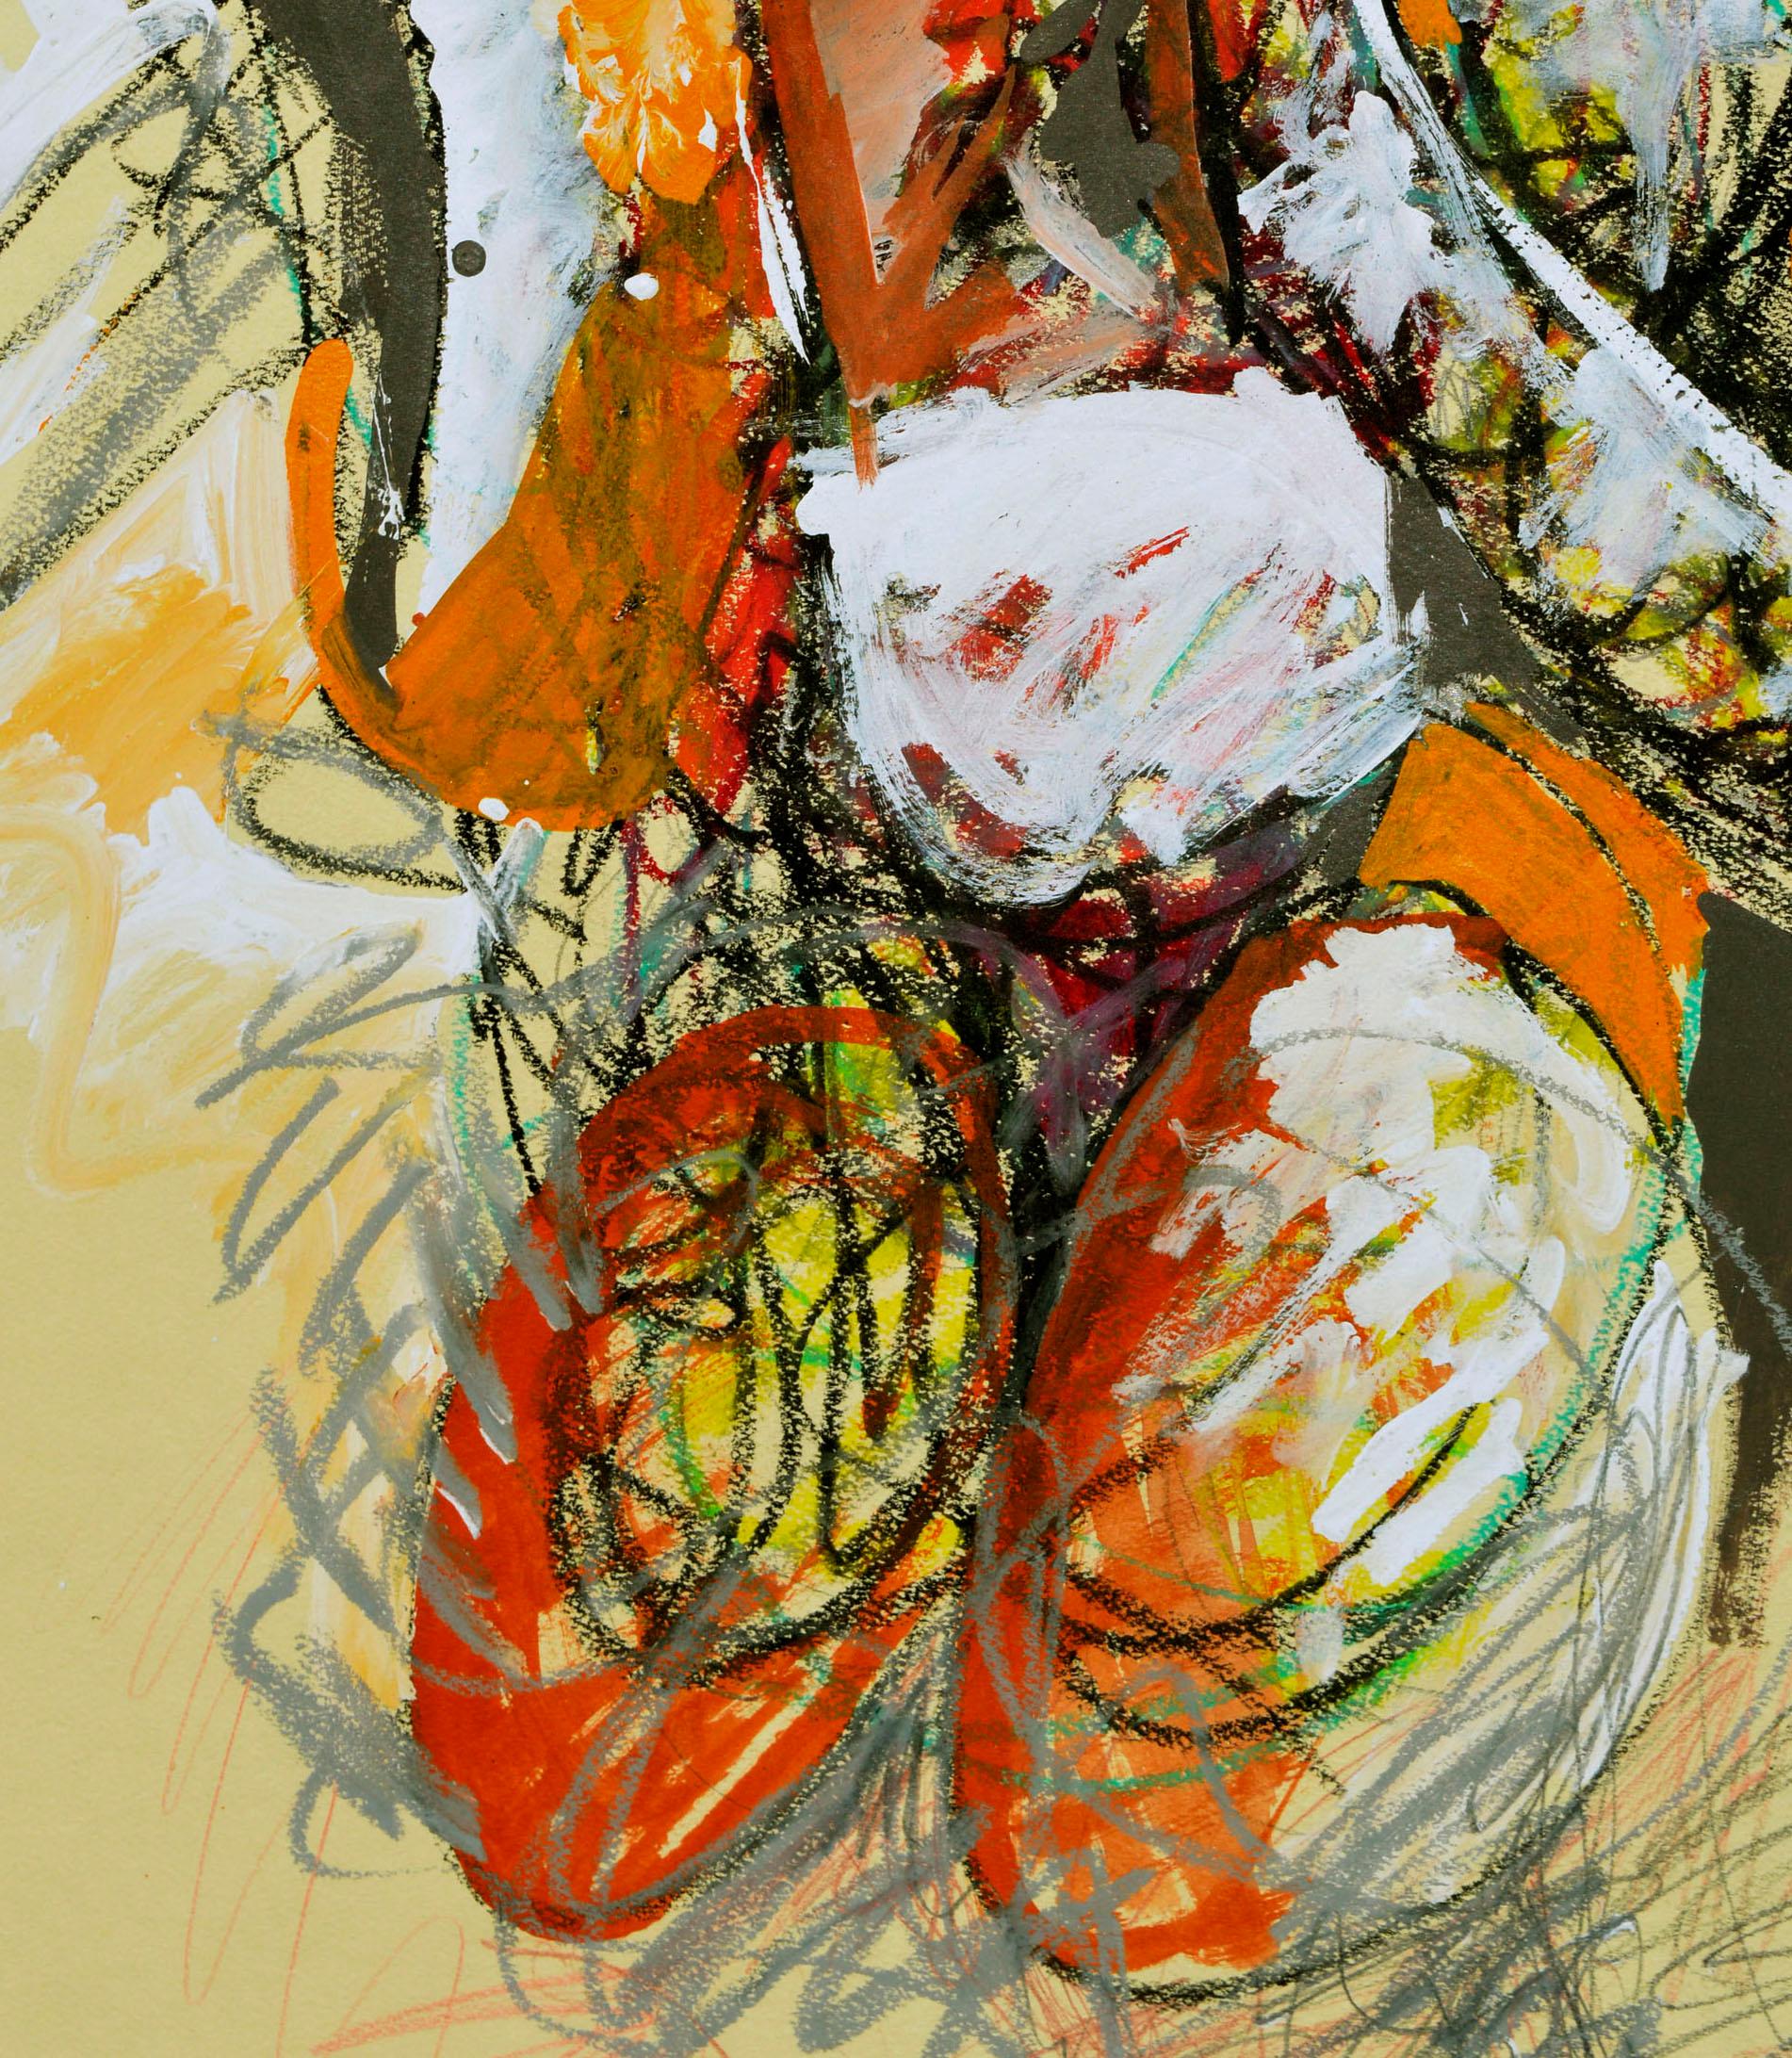 Abstrakt-expressionistische Figur  (Abstrakter Expressionismus), Painting, von Michael William Eggleston